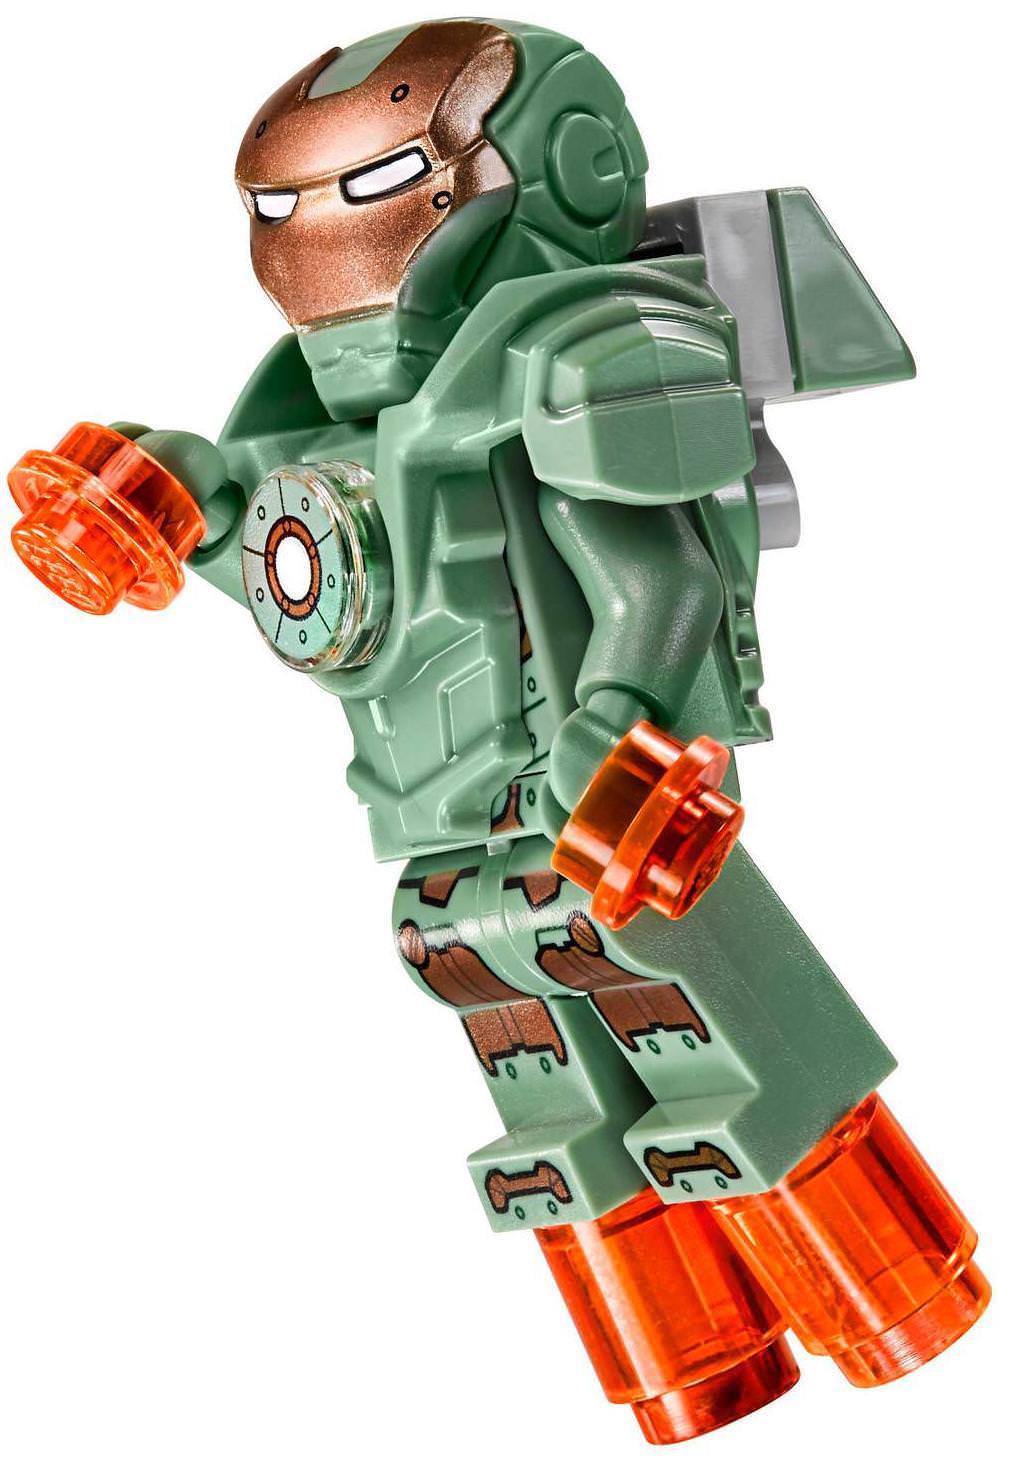 LEGO Iron Man Mark 37 “Hammerhead” Scuba Suit Armor Minifigure